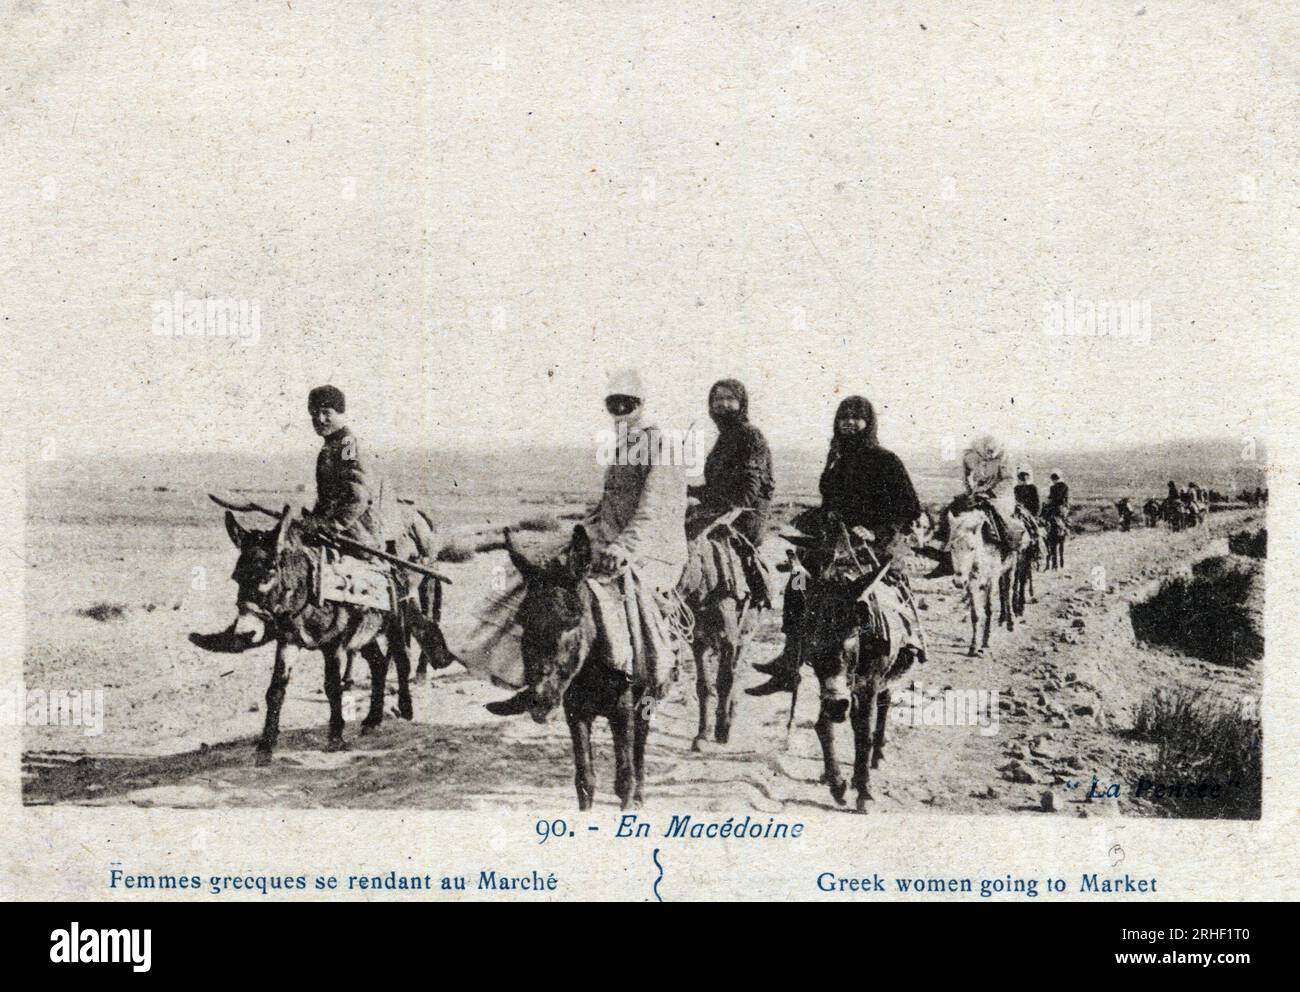 GRECE, Macedoine : femmes grecques se rendant au marche montees sur des anes - Carte postale 1914-1918 Stockfoto